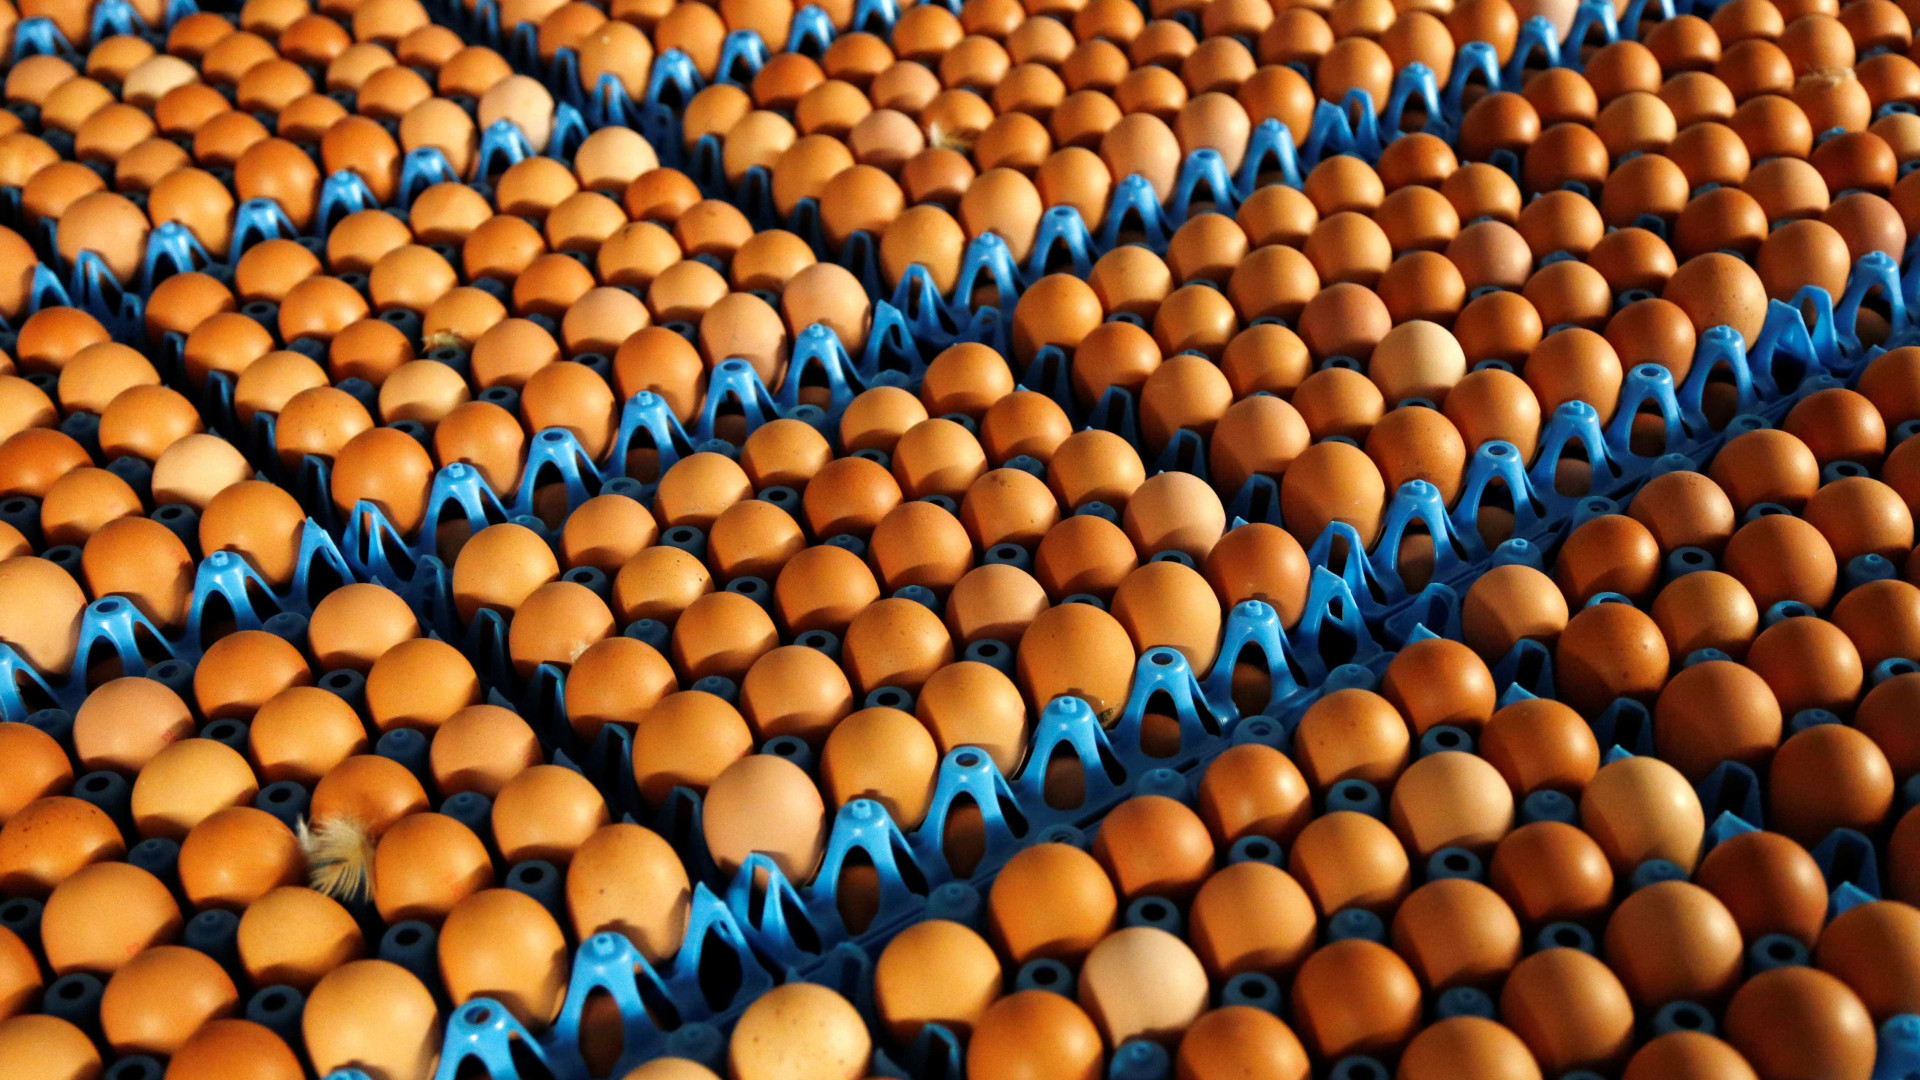 Ovos contaminados já foram identificados em 17 países